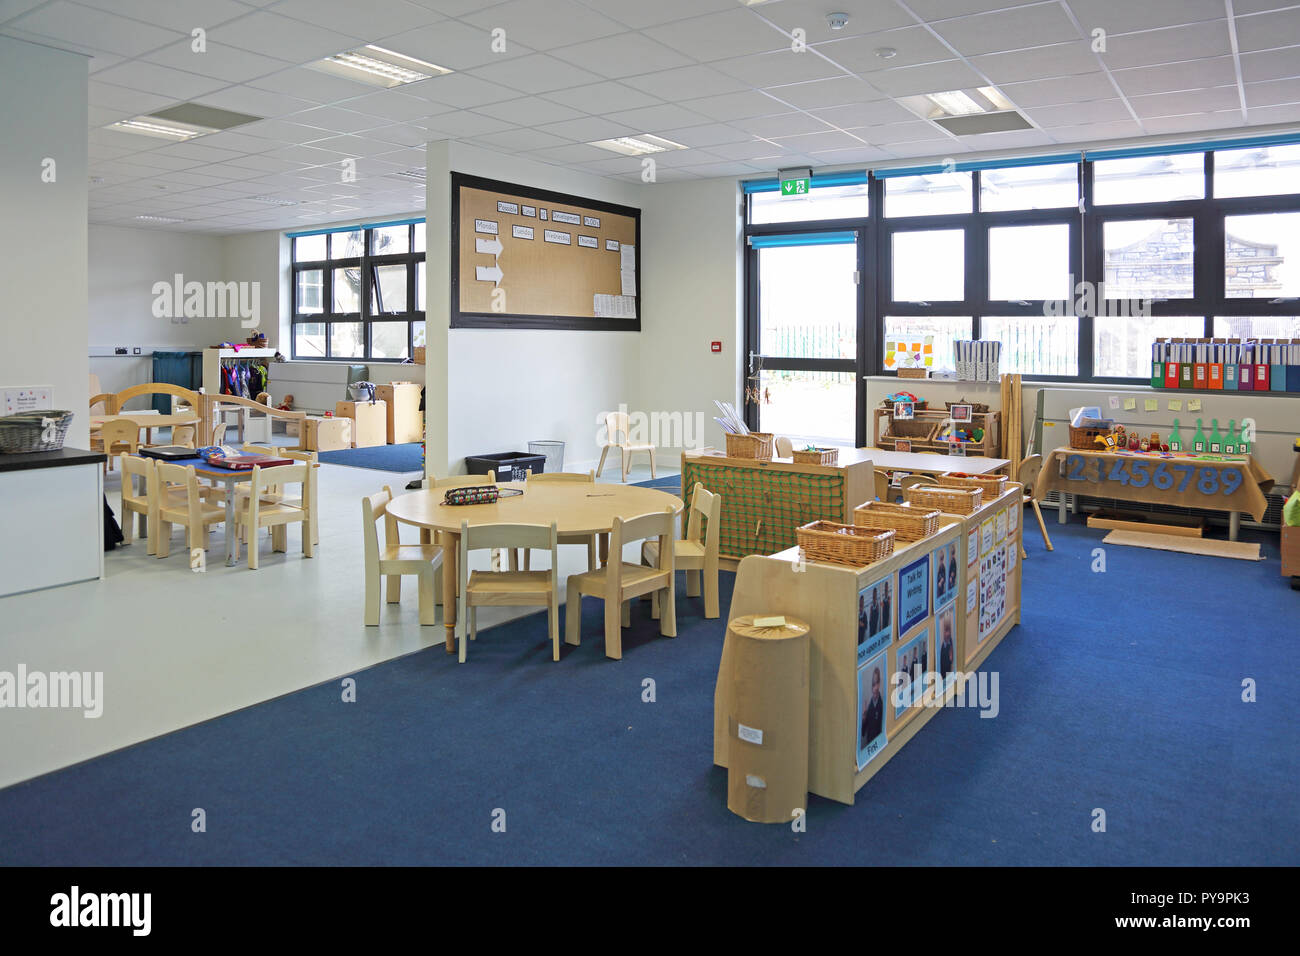 Innenansicht eines Kindergartenklasssraums in einer neuen Londoner Grundschule. Zeigt natürliche Holzmöbel.leer, keine Pupillen. Stockfoto